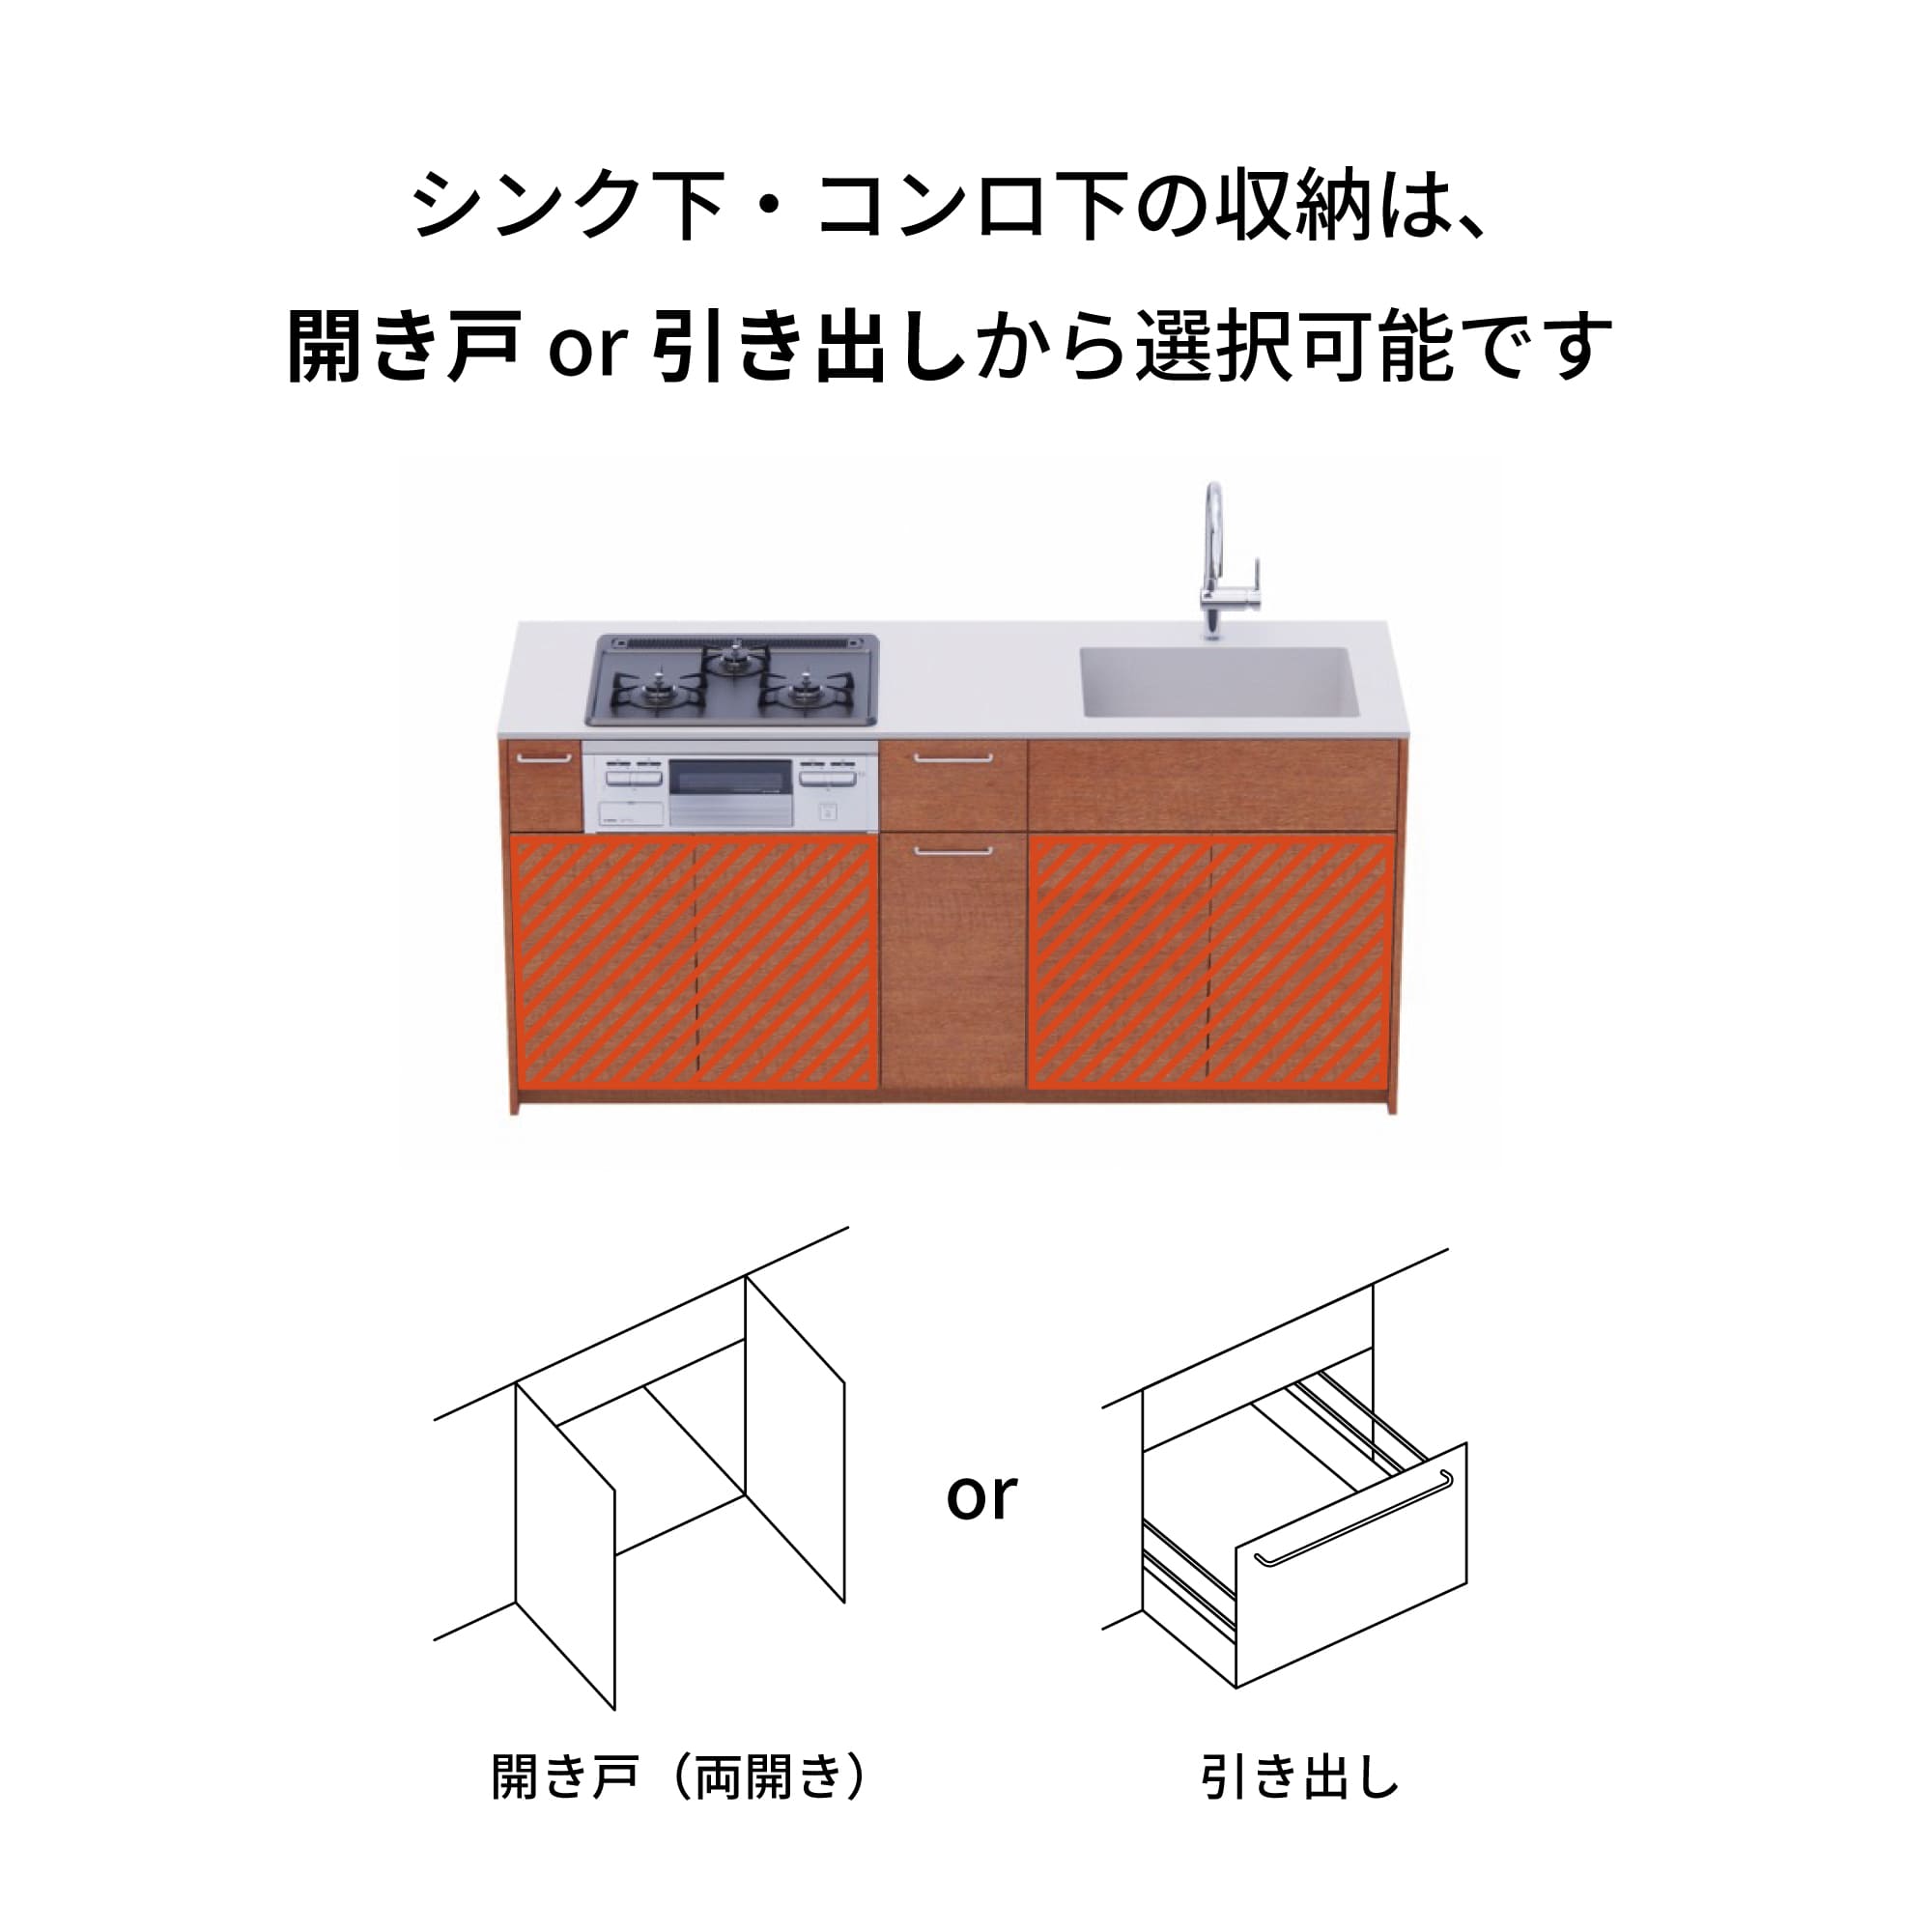 木製システムキッチン 壁付け型 W1990・コンロあり / オーブンなし / 食洗機あり KB-KC022-15-G183 引き出し下とコンロ下の収納が選択可能です